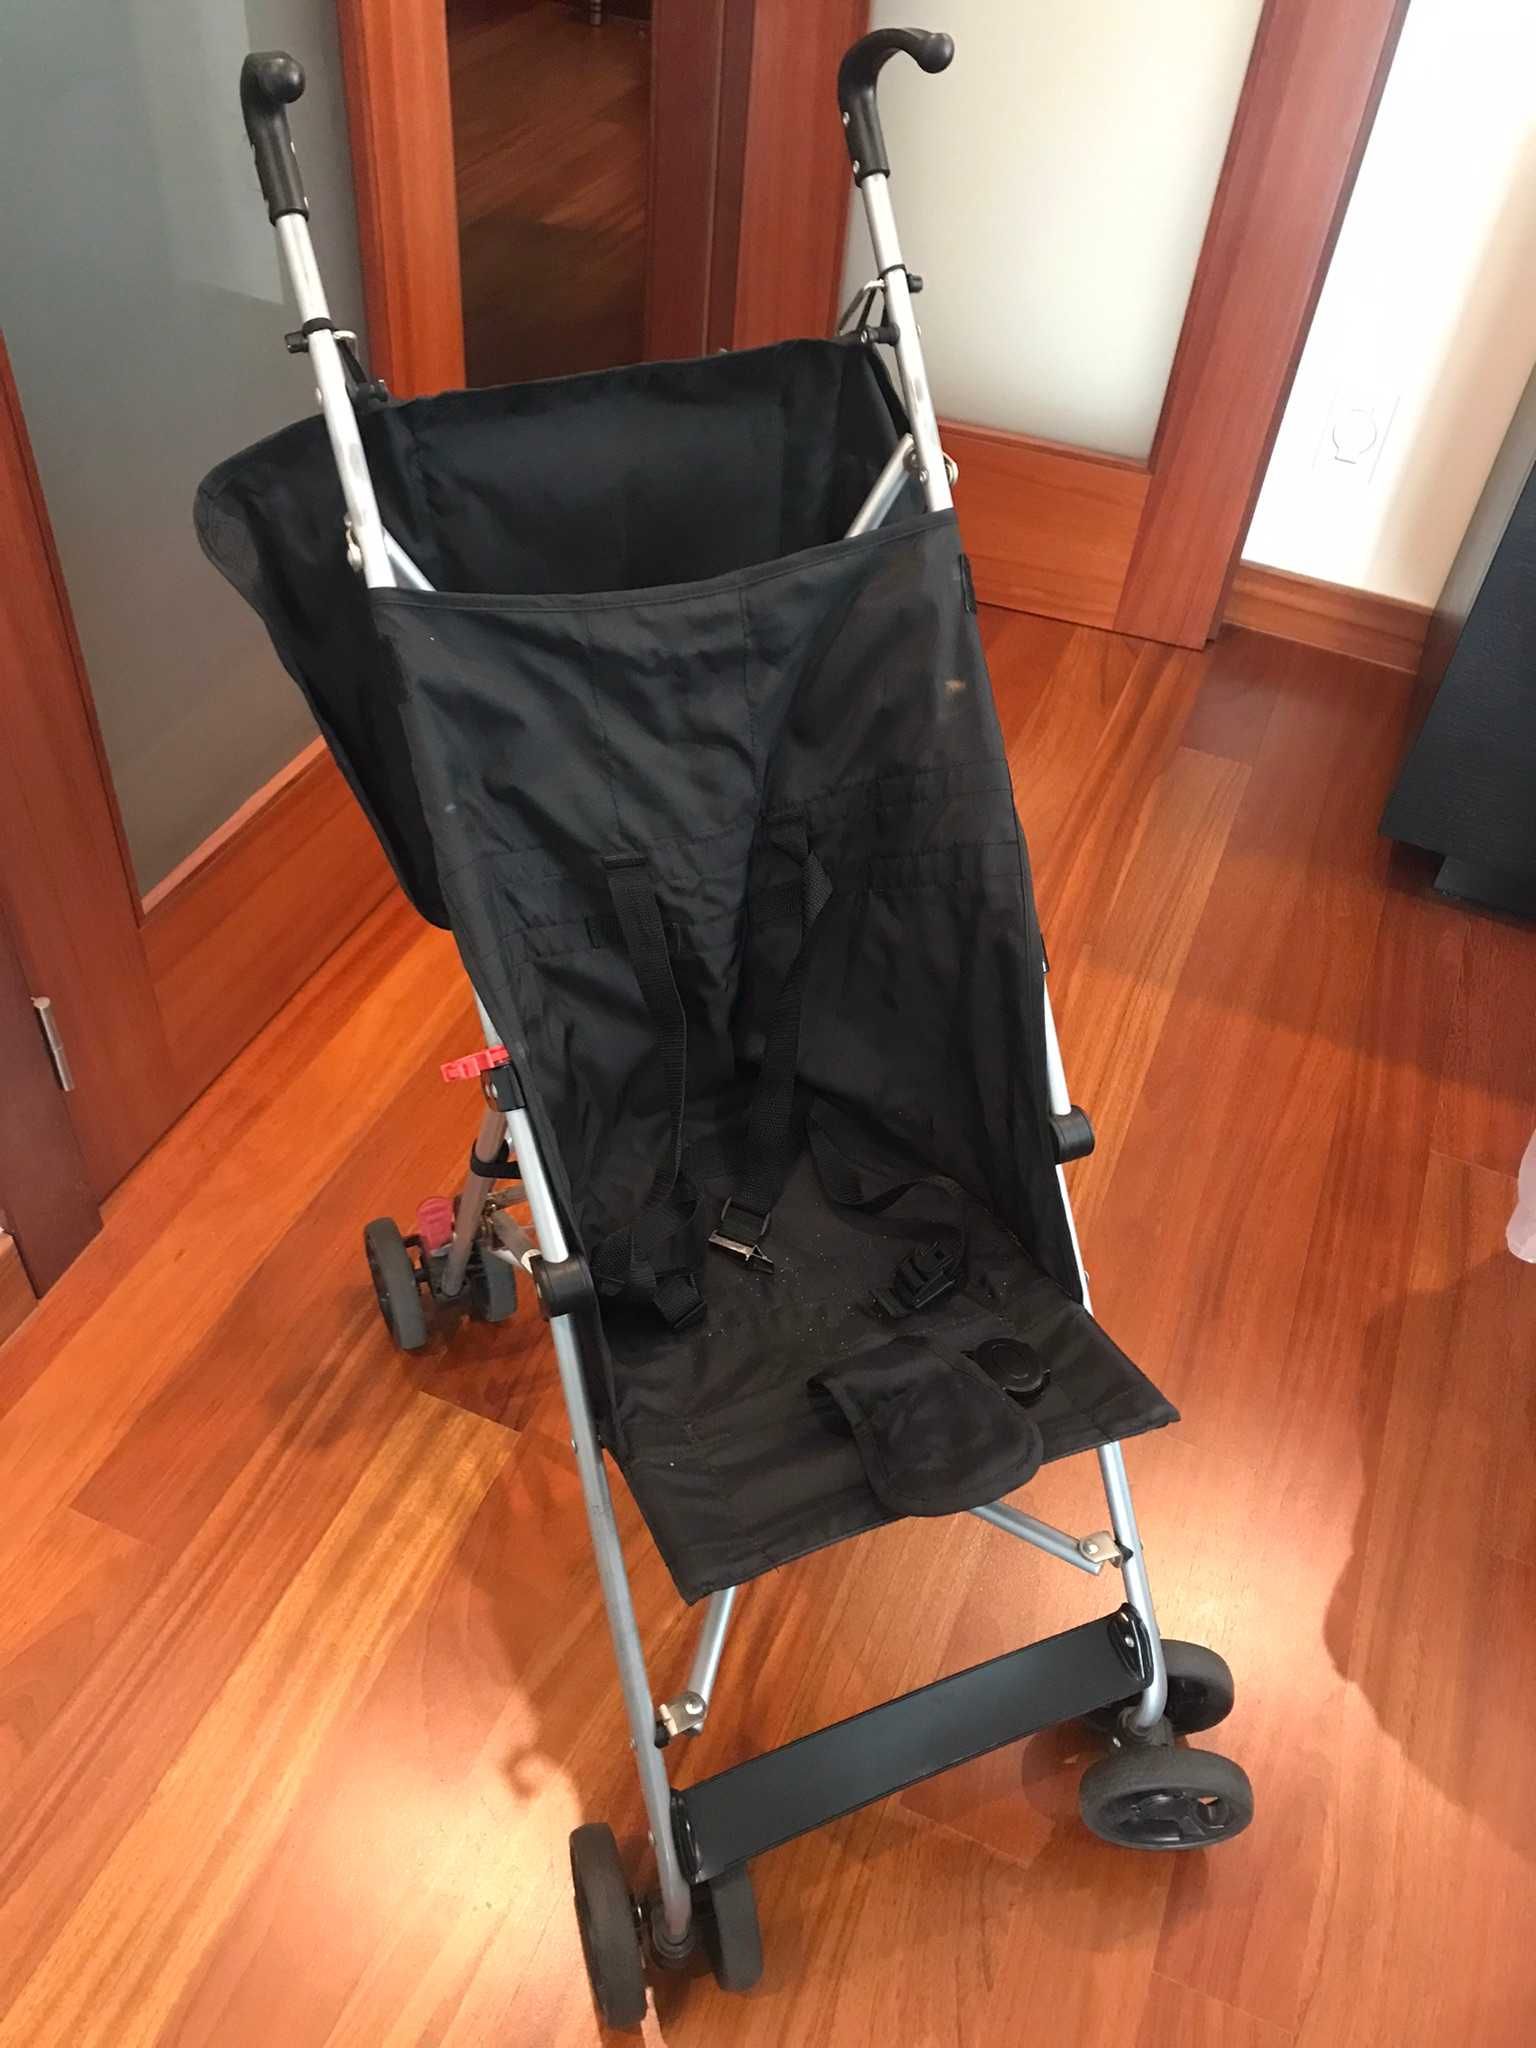 Cadeira rotativa 360 Axissfix Plus Bebeconfort + artigos bébé